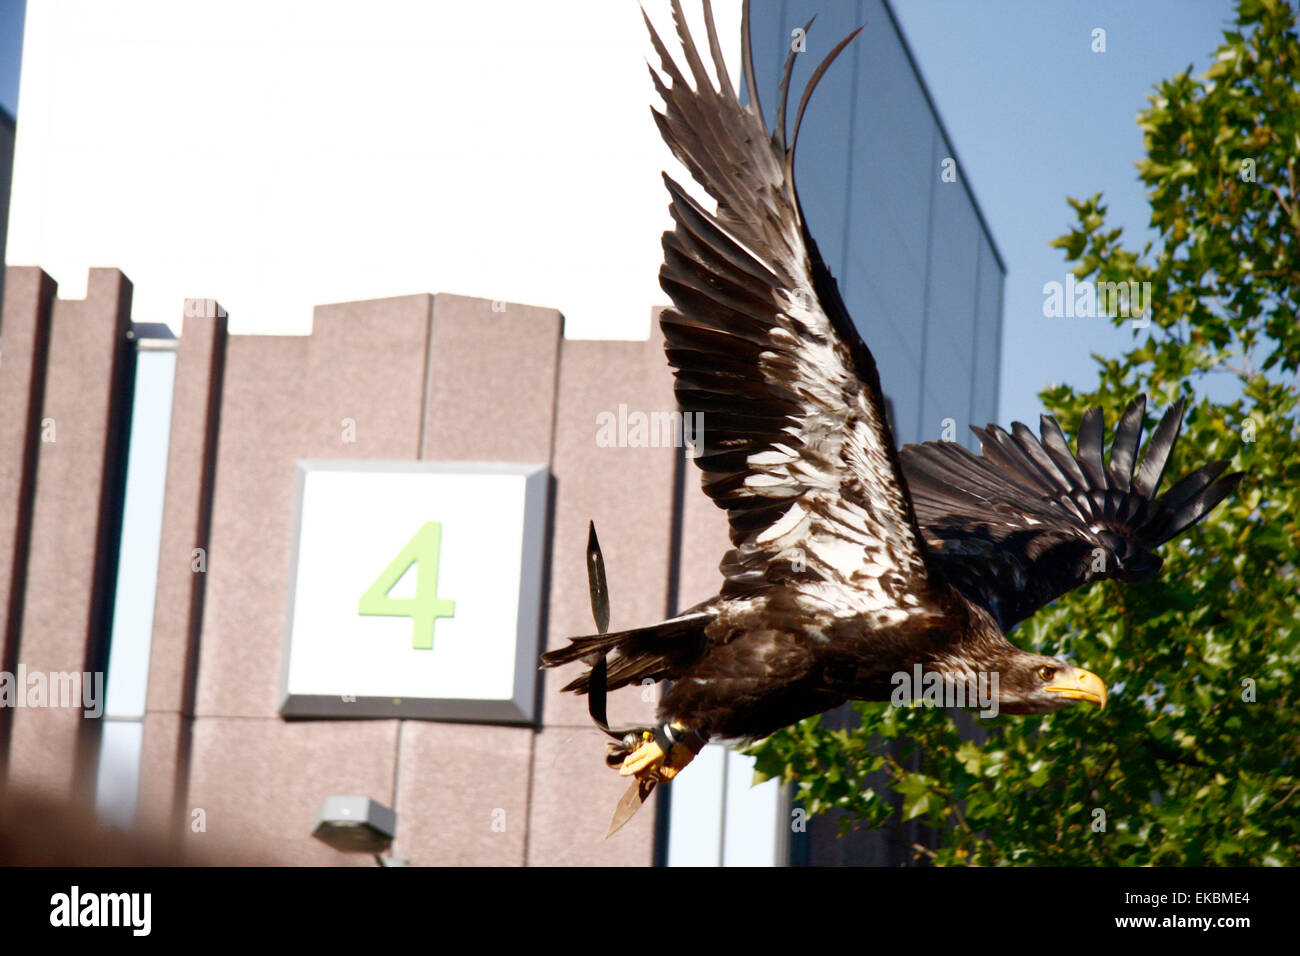 22 septembre 2008 - Cologne : présentation d'un aigle volant à la Photokina 2010 à Cologne la photo. Banque D'Images